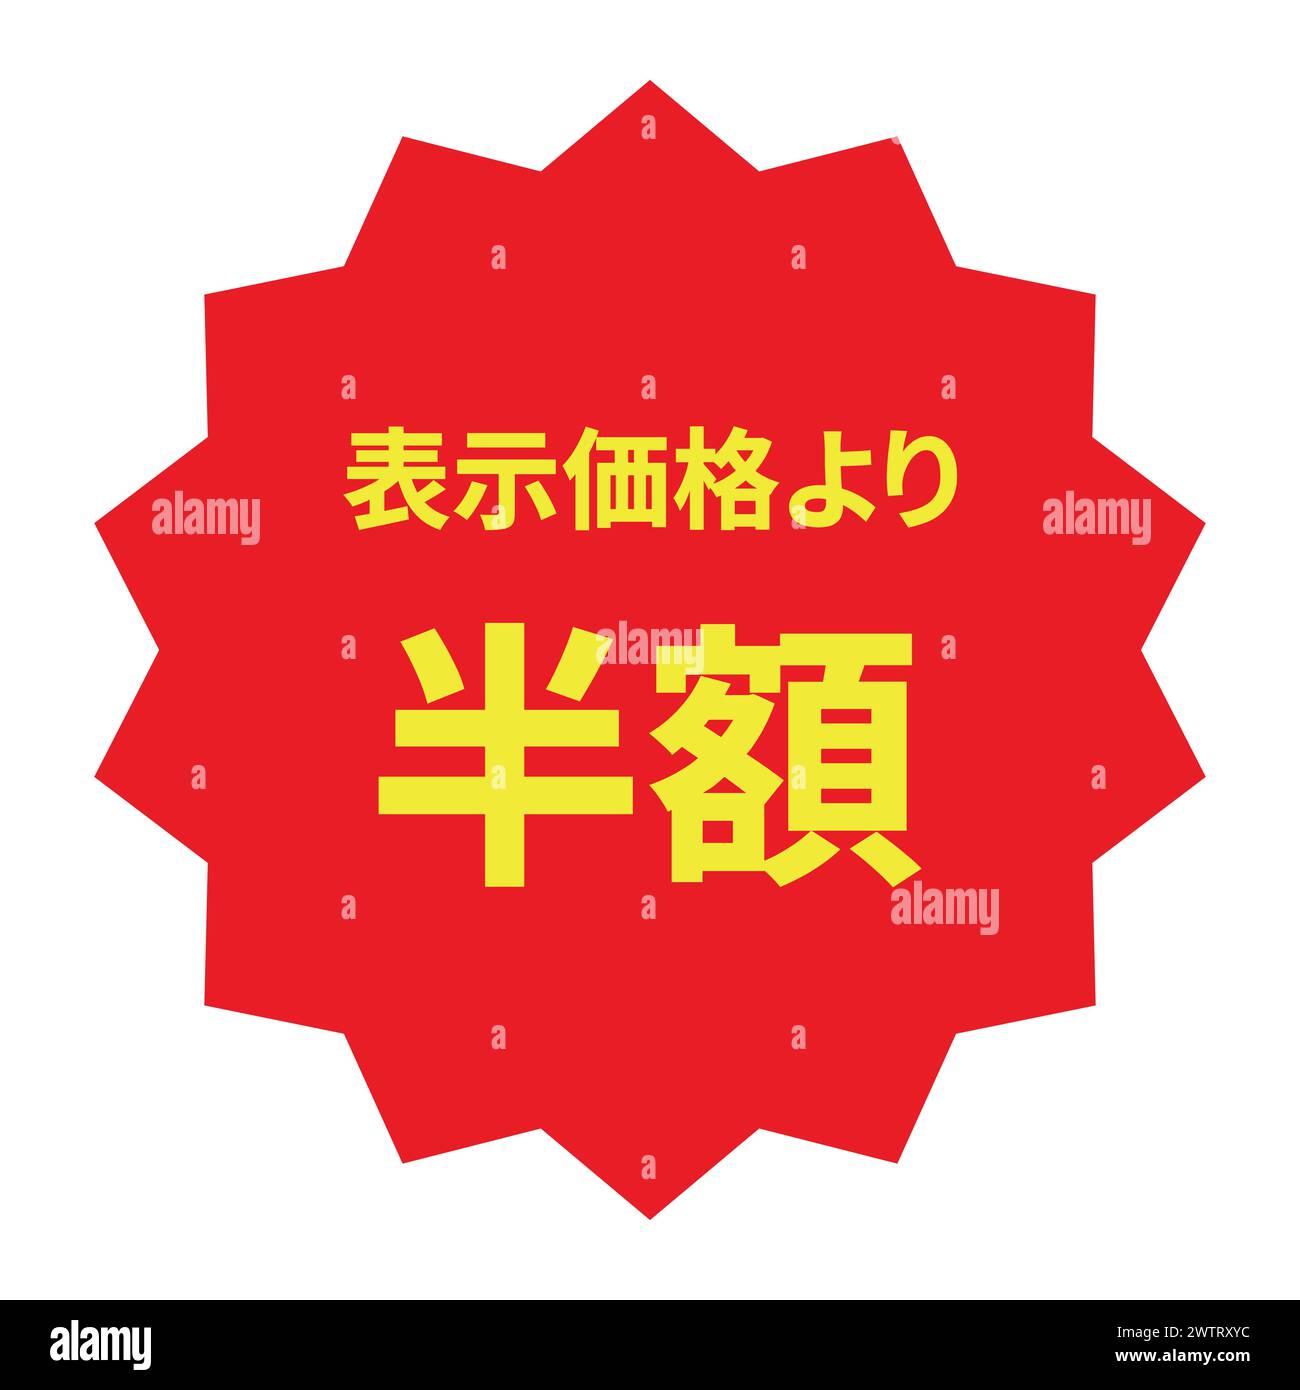 etichetta di sconto giapponese a metà prezzo vettoriale rosso Illustrazione Vettoriale